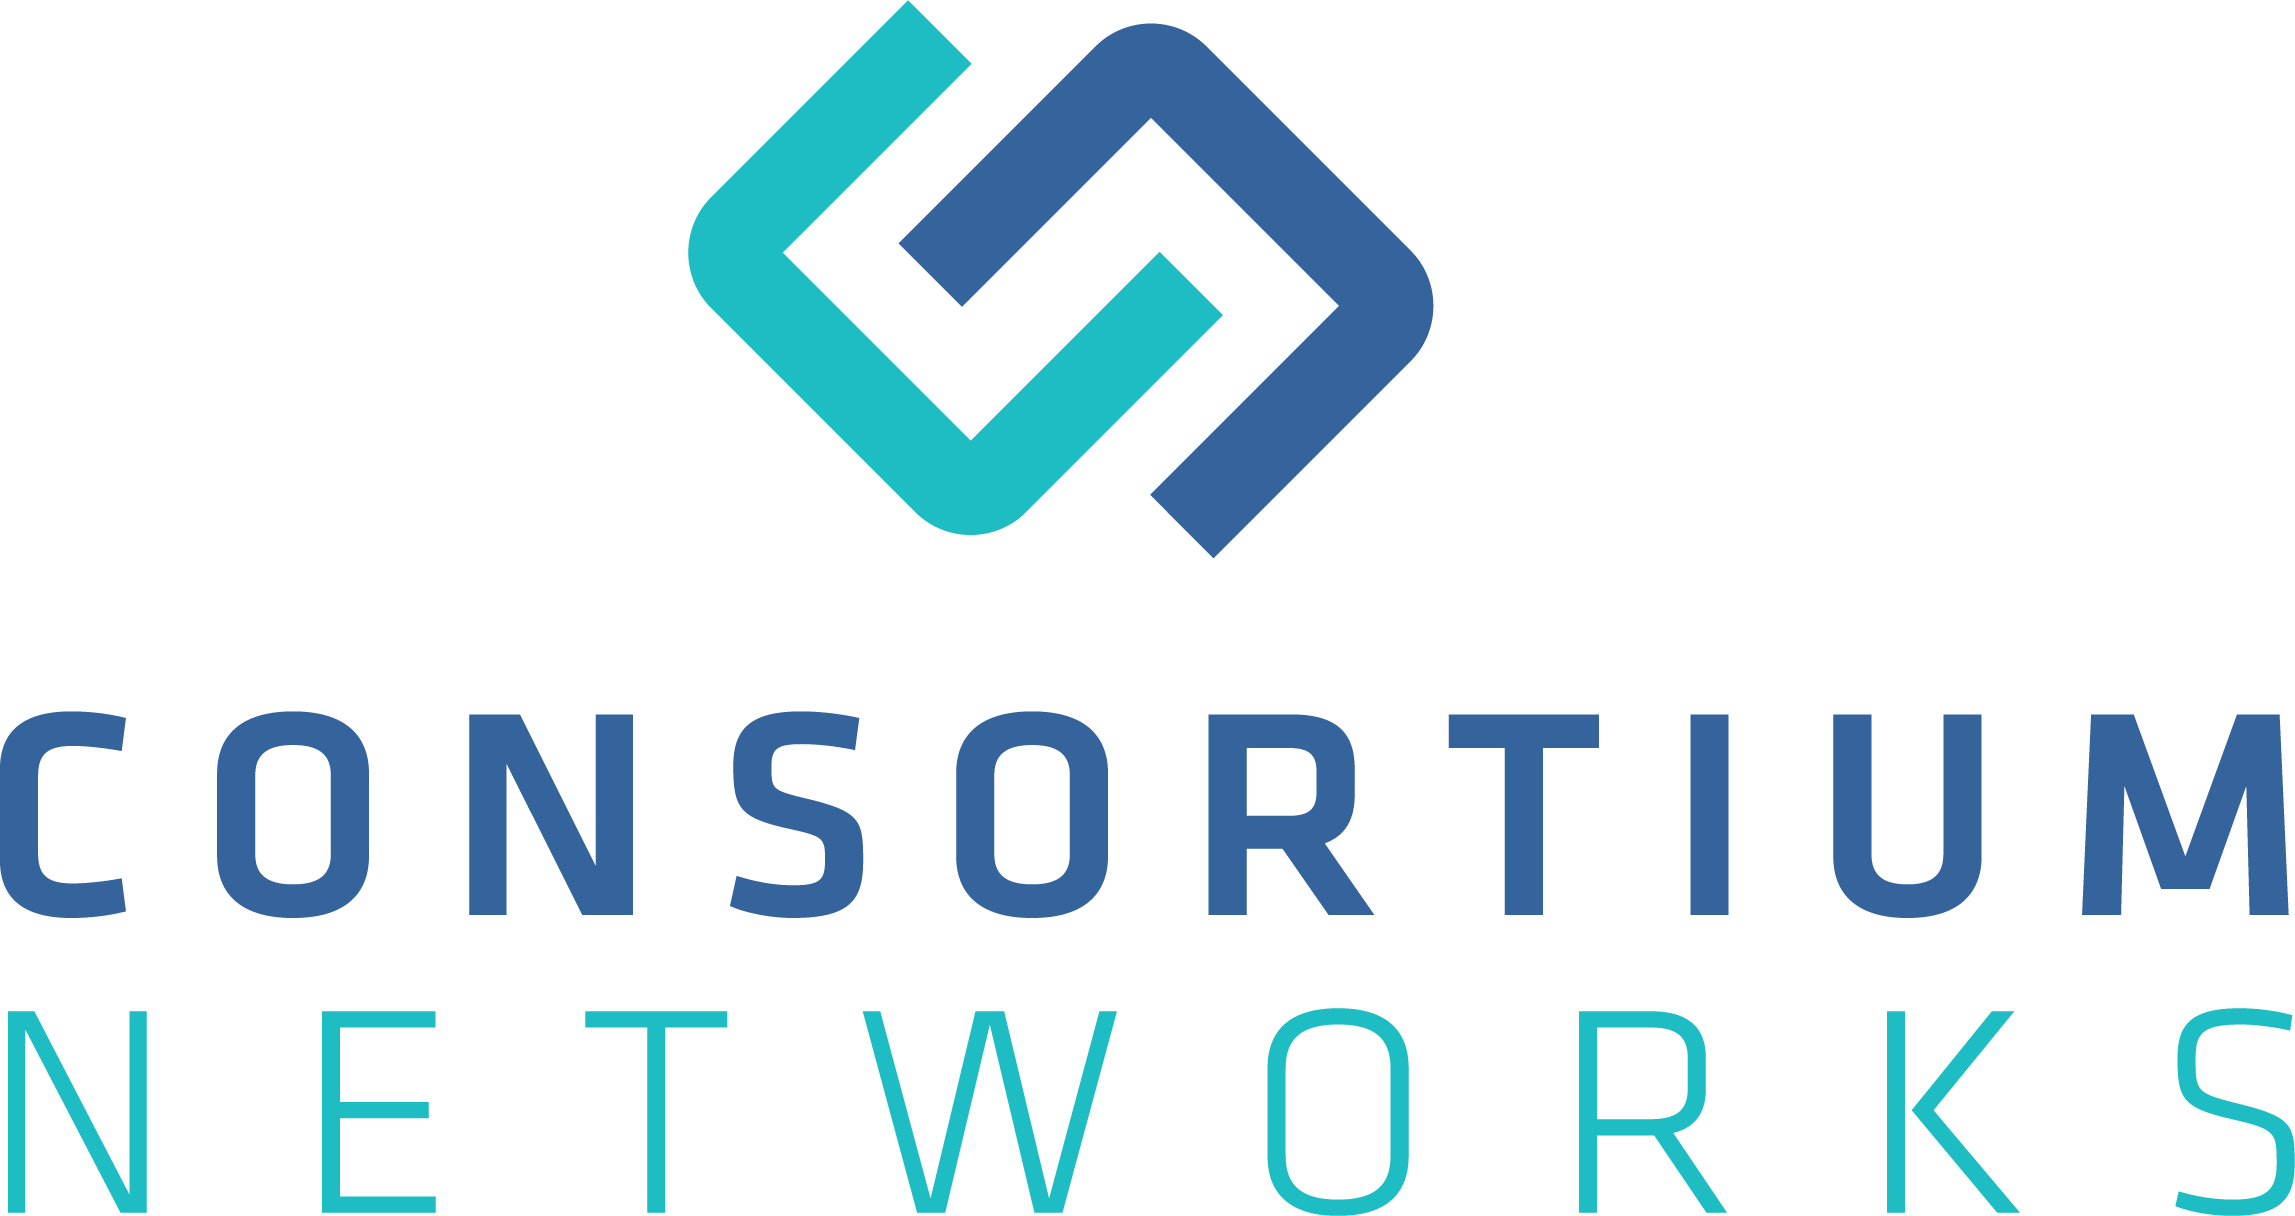 Consortium Networks